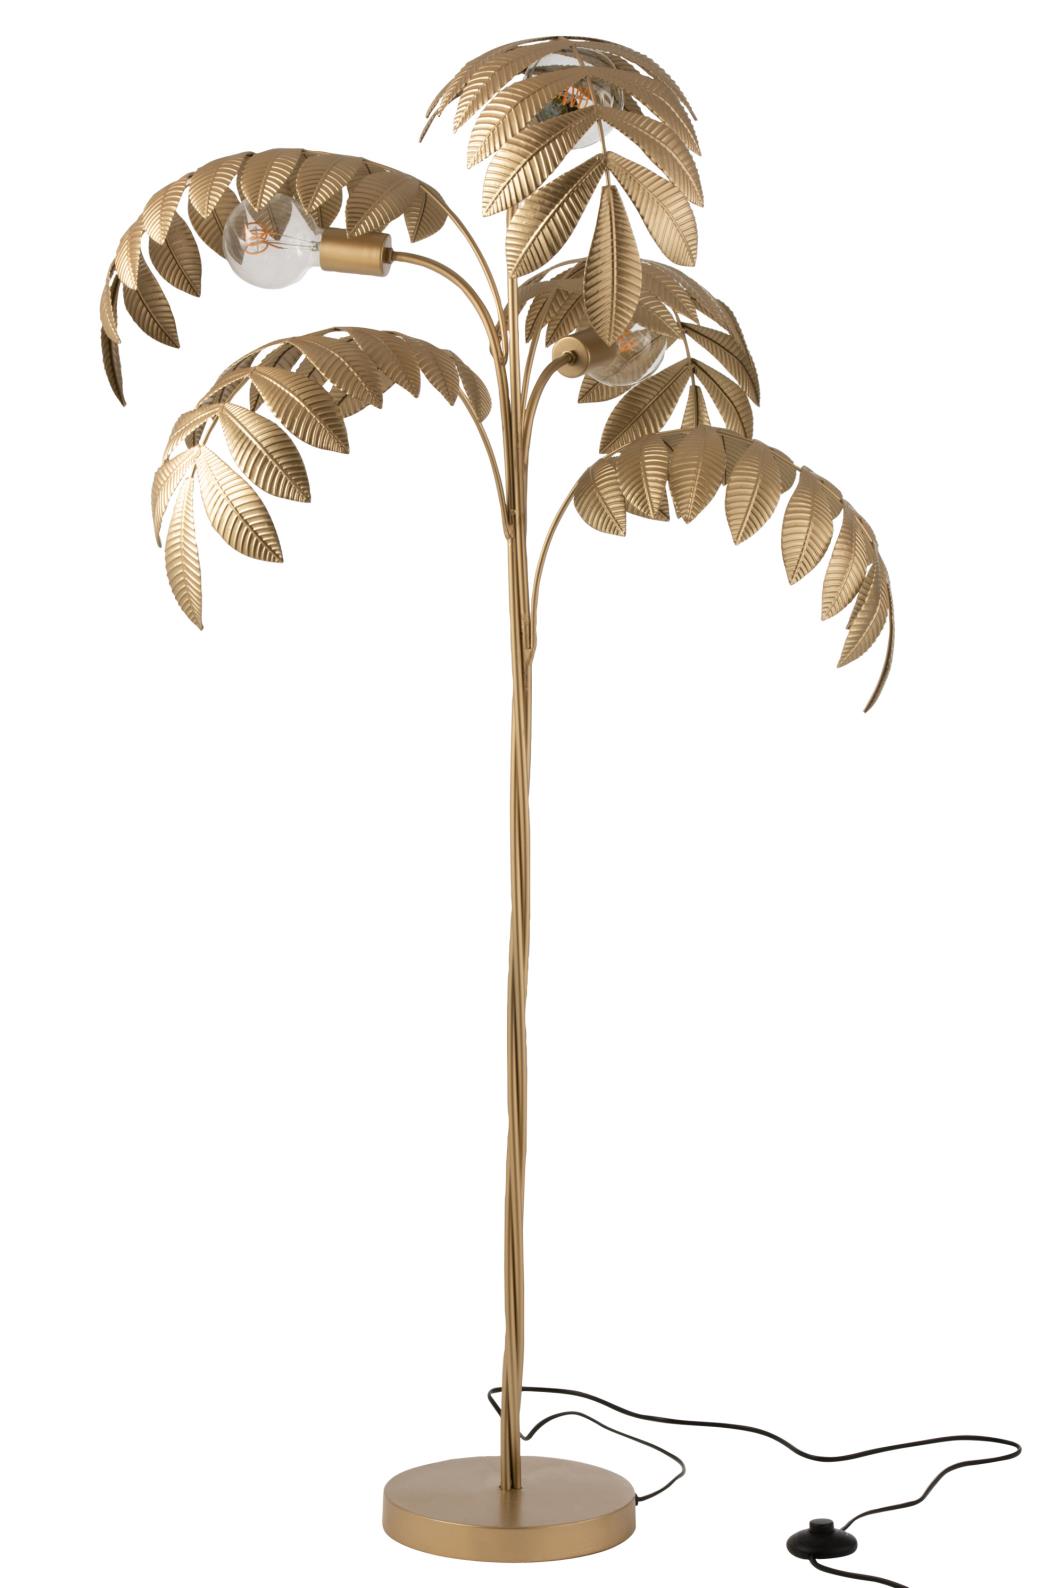 Stehlampe Palme Zink Gold - stilvolle Beleuchtung im tropischen Design